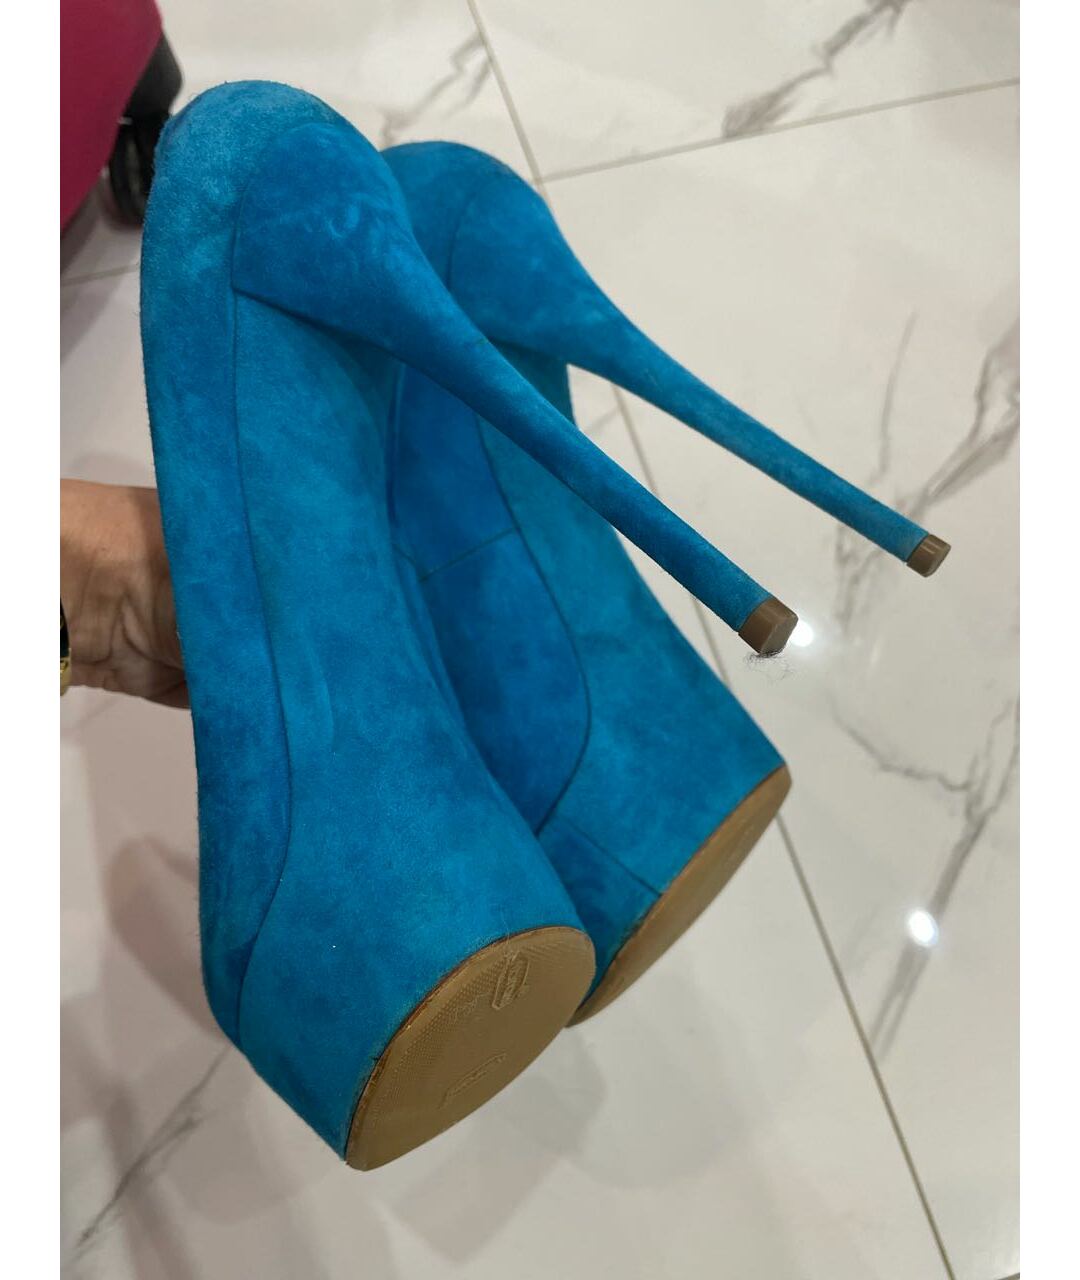 CASADEI Голубые замшевые туфли, фото 5